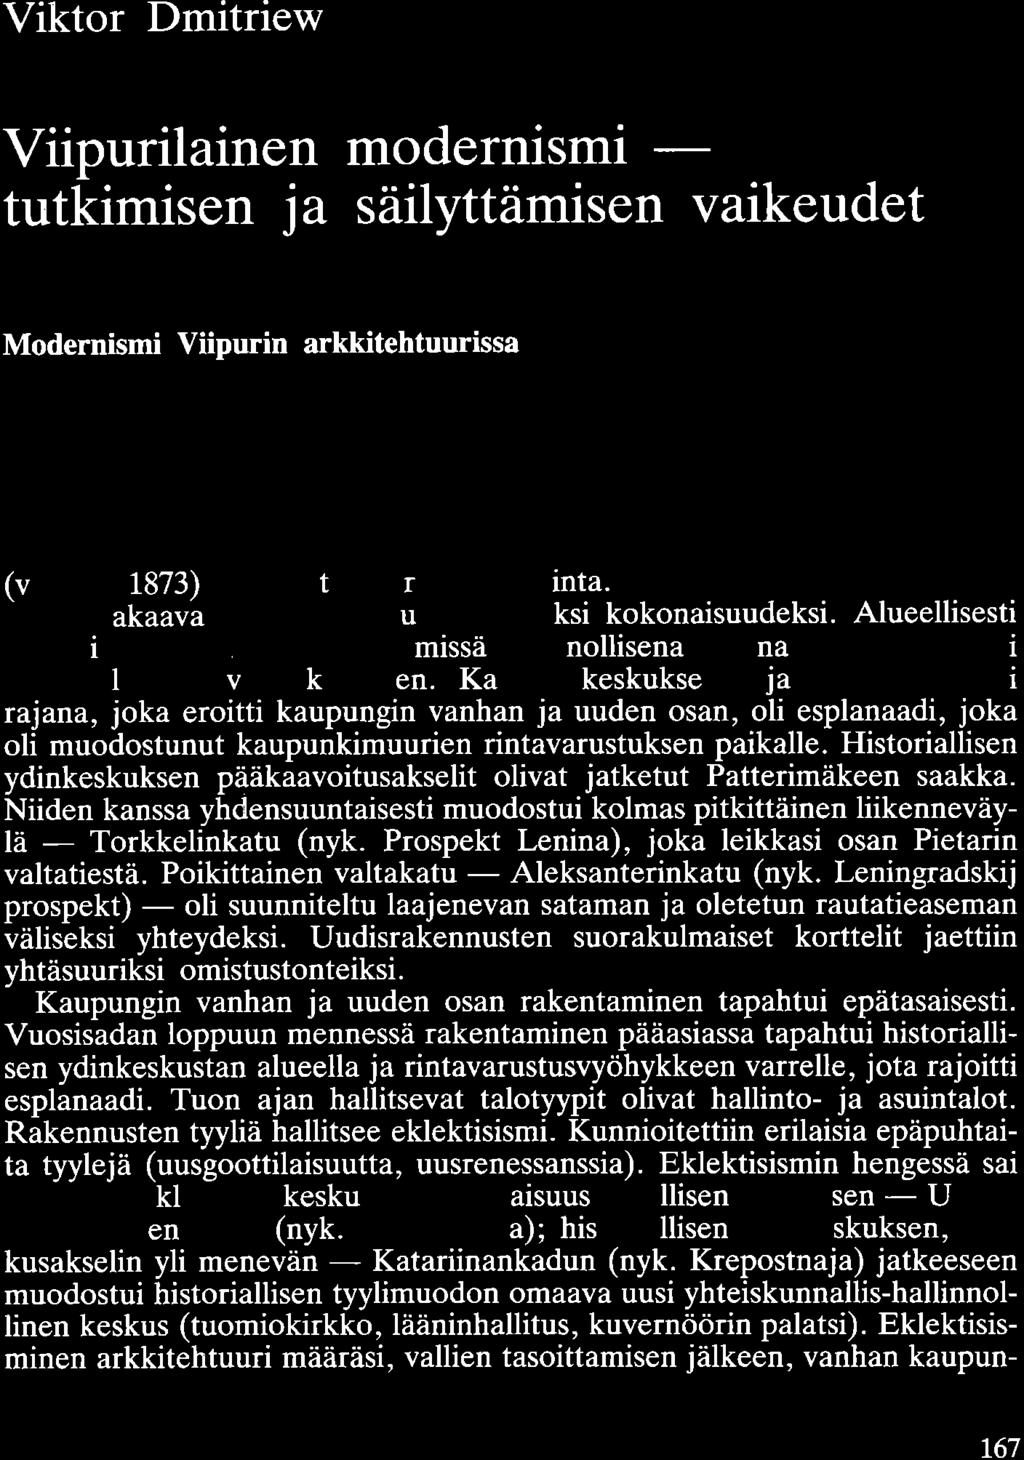 Viktor Dmitriew Viipurilainen modernismi - tutkimisen ja säilyttämisen vaikeudet Modernismi Viipurin arkkitehtuurissa 1800-luvun puolivälissä Viipuri kehittyi Suomen suurimmaksi kauppa- ja